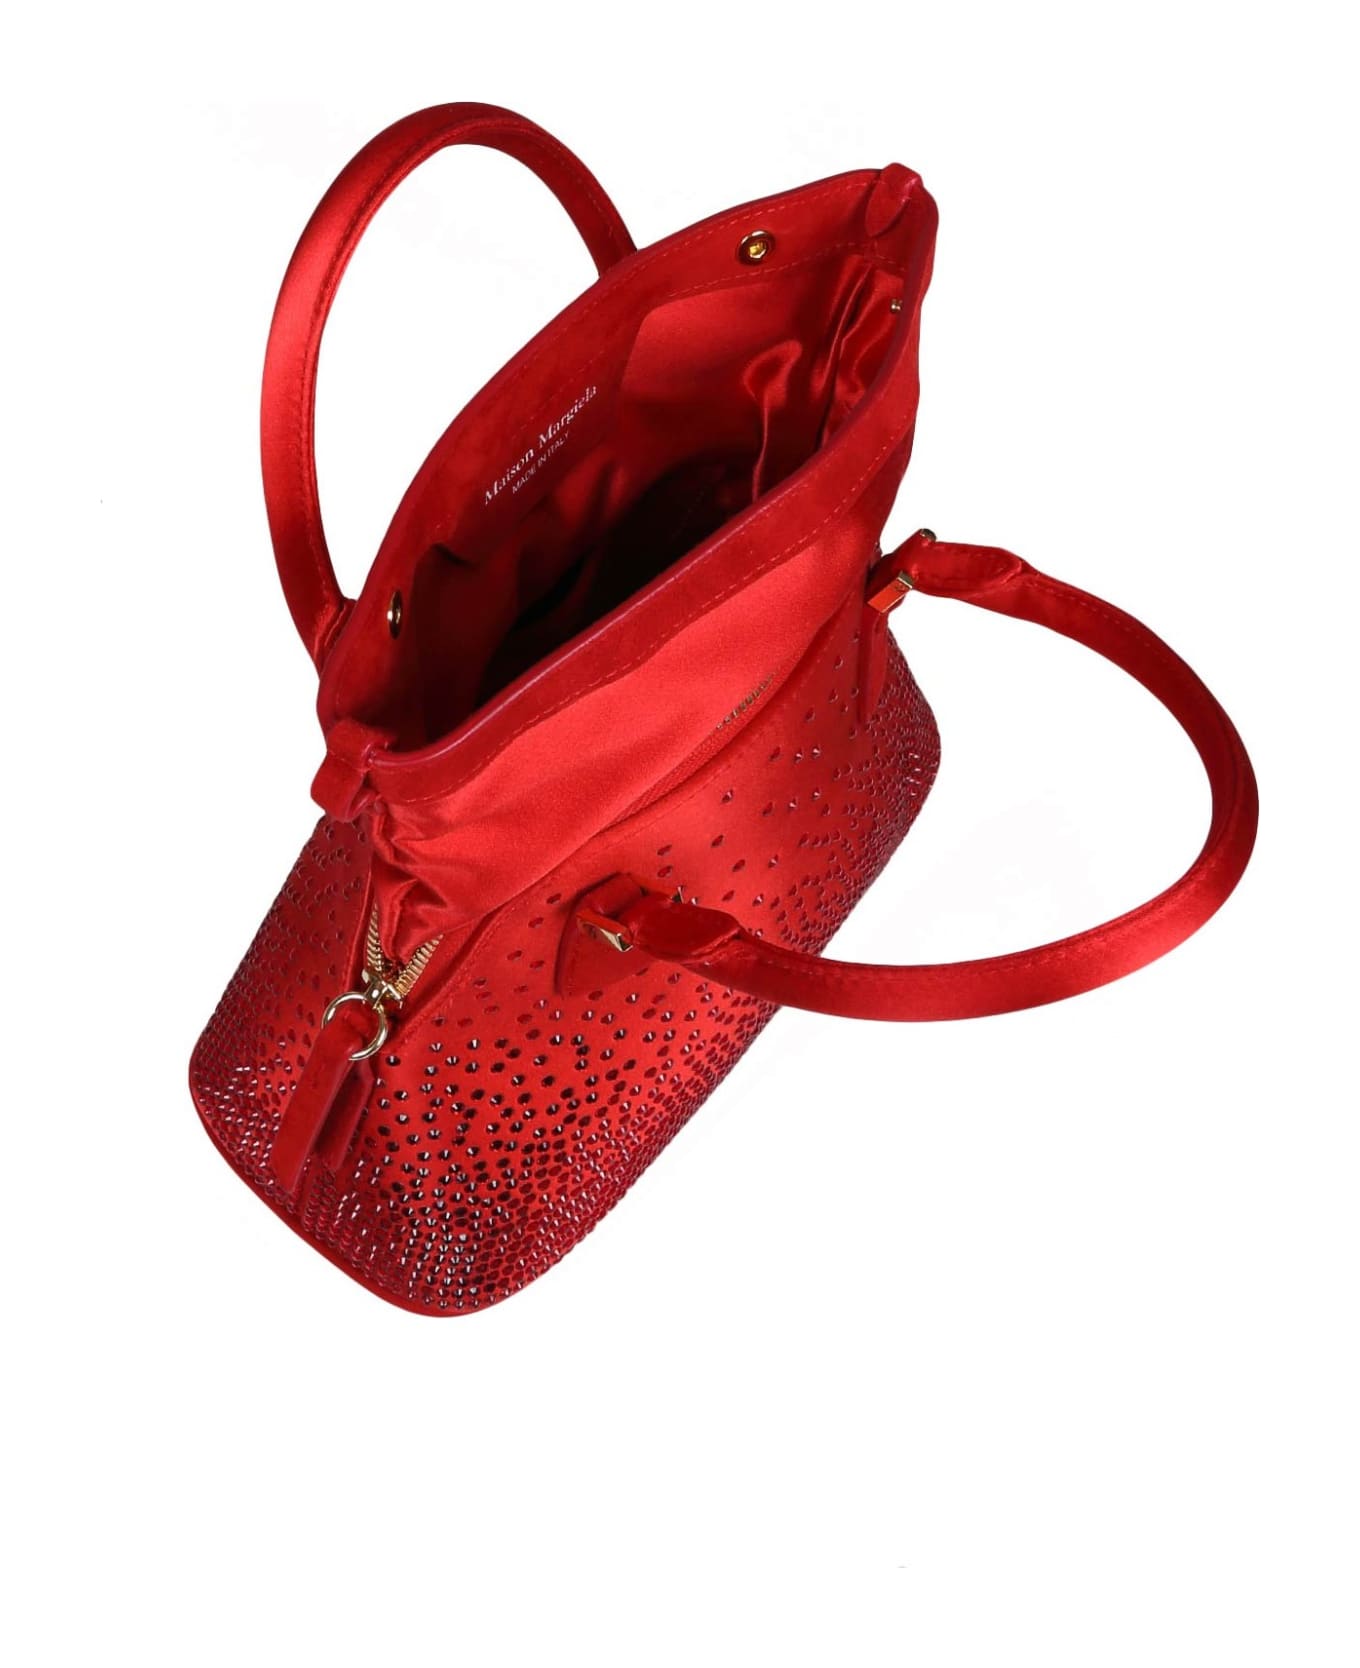 Maison Margiela 5ac Classic Handbag - Red